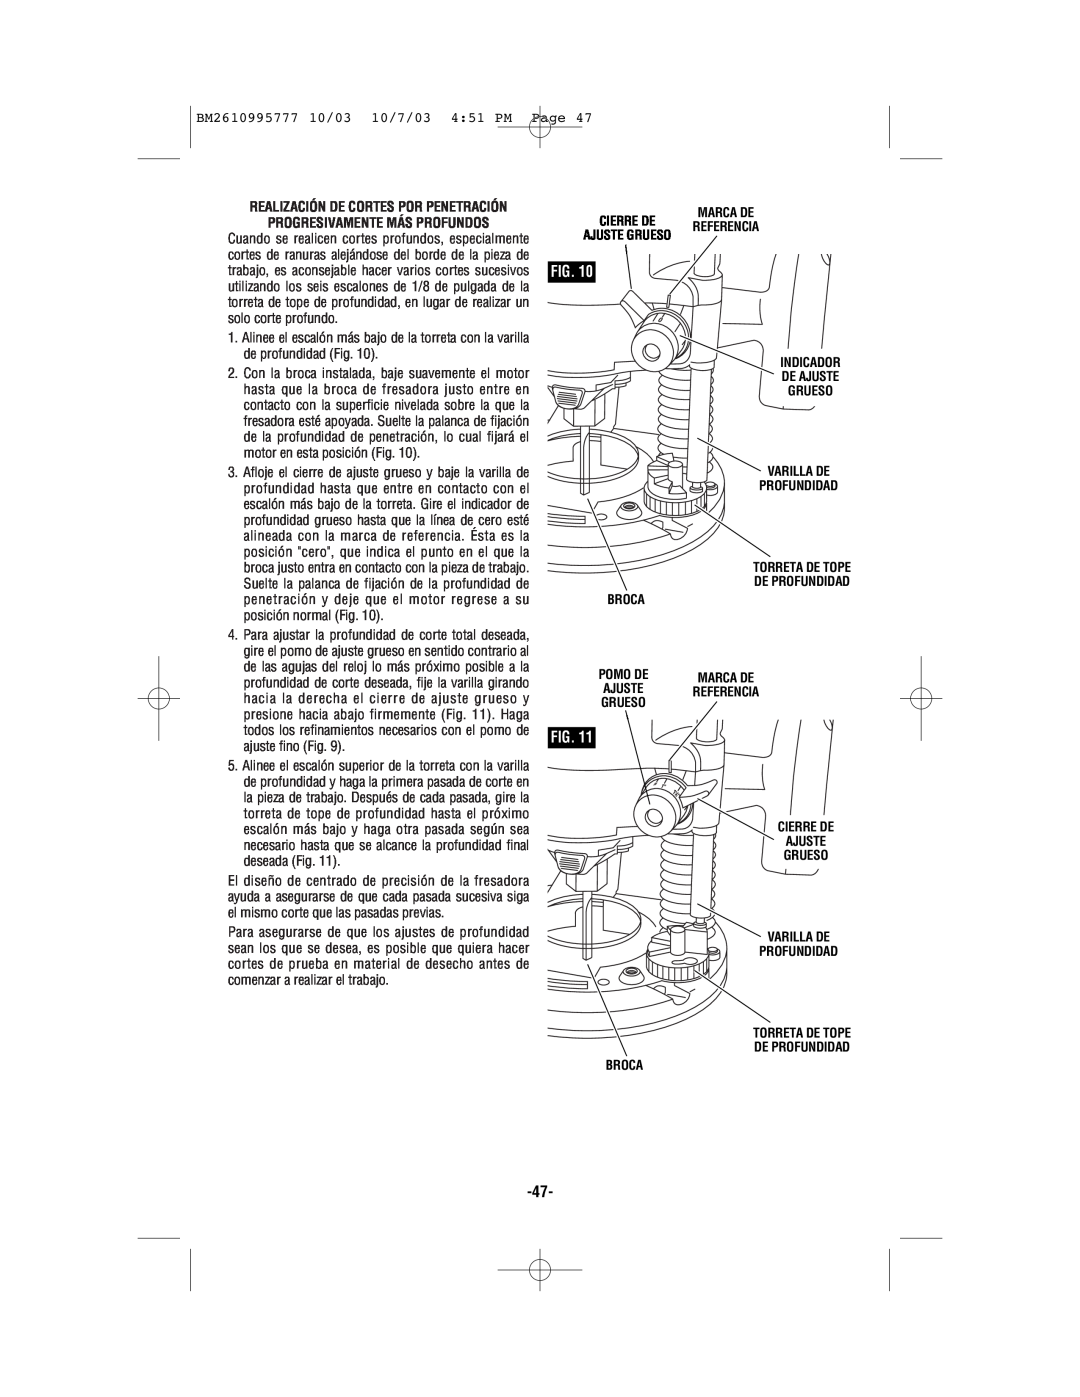 Bosch Power Tools 1619EVS manual BM2610995777 10/03 10/7/03 451 PM Page, Marca De Cierre De Referencia Ajuste Grueso 